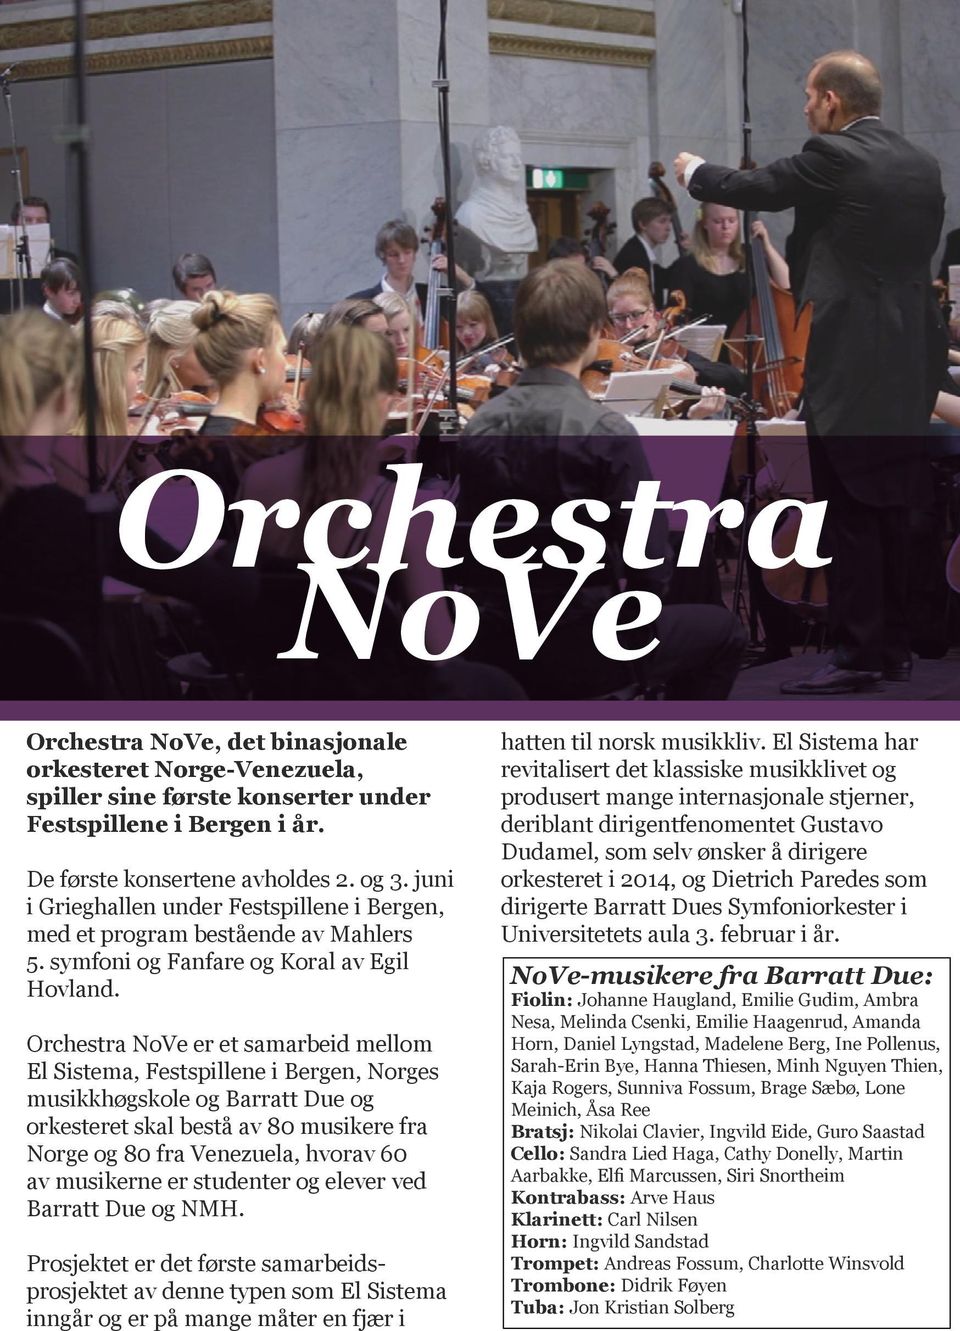 Orchestra NoVe er et samarbeid mellom El Sistema, Festspillene i Bergen, Norges musikkhøgskole og og orkesteret skal bestå av 80 musikere fra Norge og 80 fra Venezuela, hvorav 60 av musikerne er